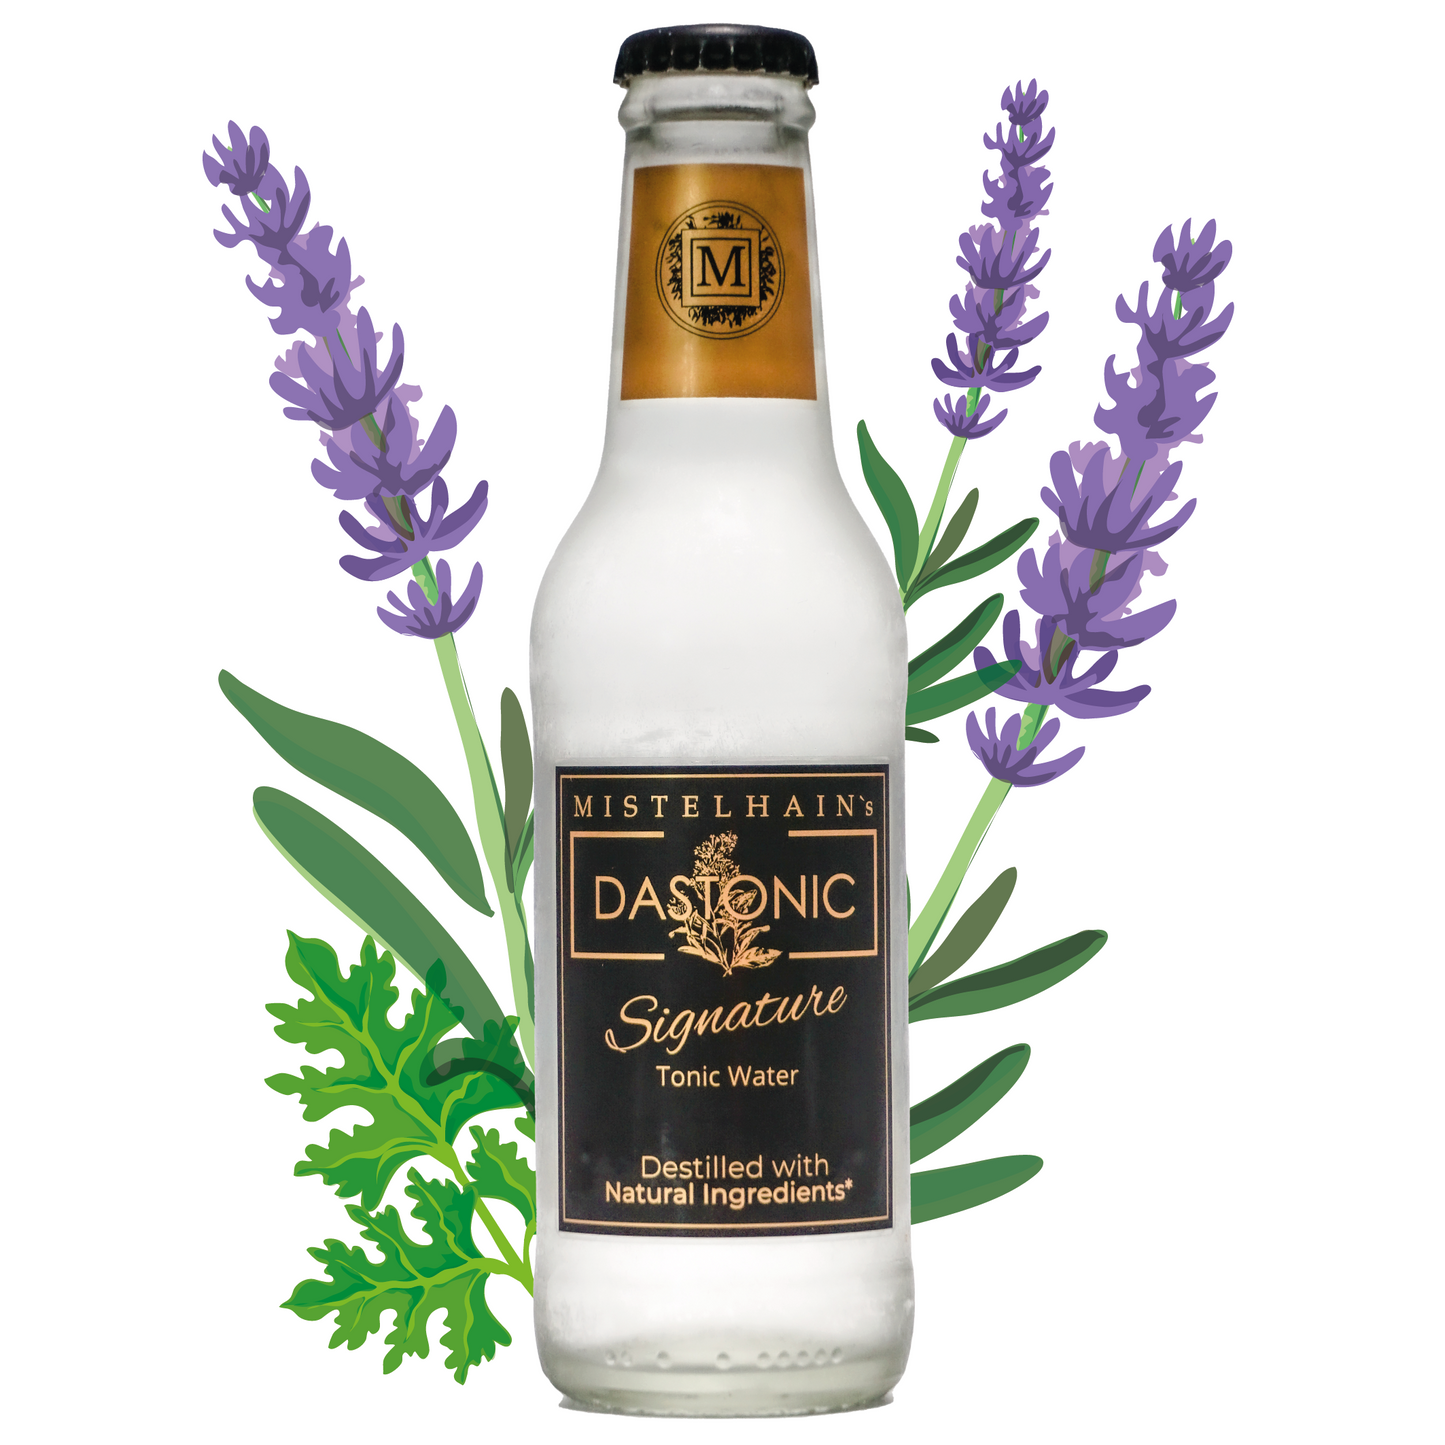 Tonic Water Mistelhain's DASTONIC Signature in einer 200 ml Glasflasche mit einem schwarz-silber Etiketten und Kronenkorken. Im Hintergrund sind Lavendel Blüten zu sehen.